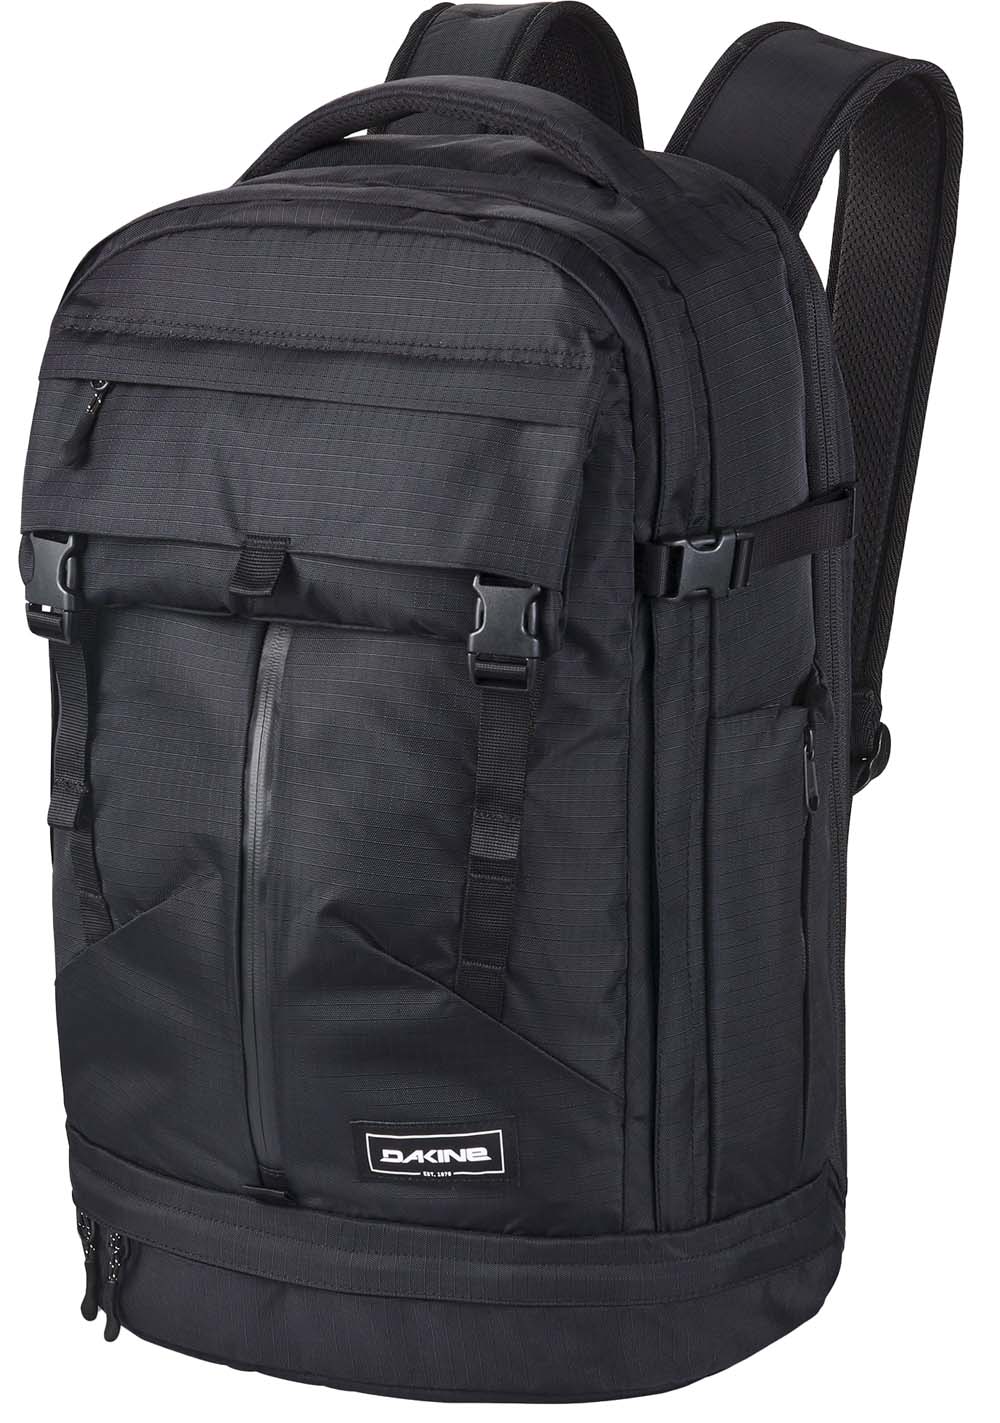 Dakine Verge Backpack 32l Black Ripstop